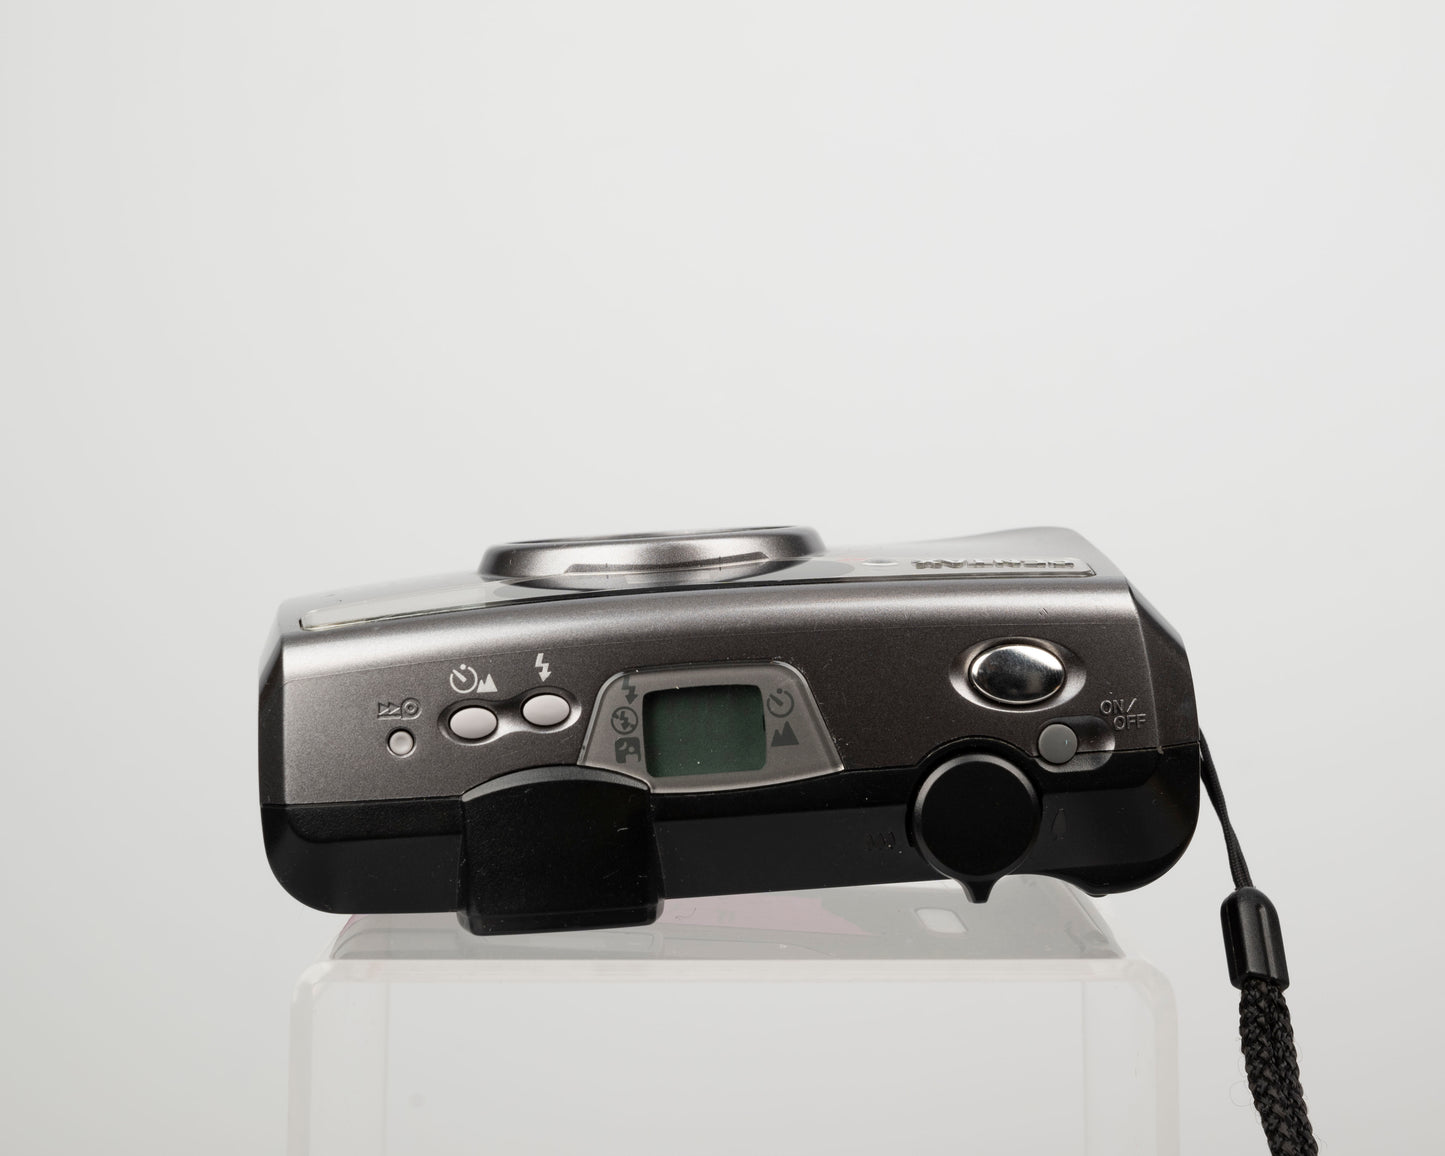 Pentax Espio 115S 35mm camera w/ case (serial 5536655)